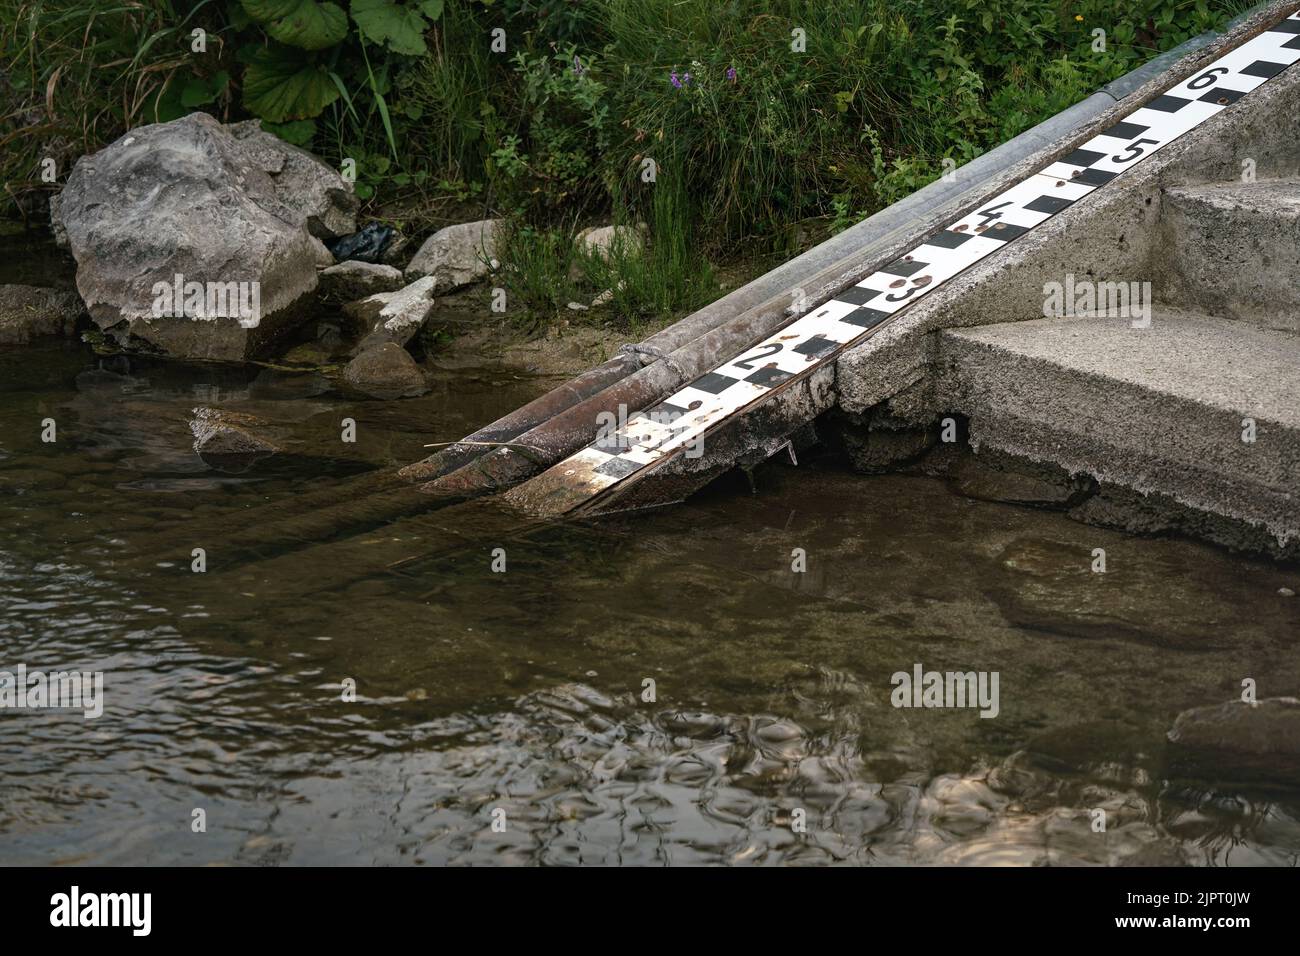 Skalieren Sie am Ufer des Flusses, um den Wasserstand zu messen, der auf diesem Foto sehr niedrig ist Stockfoto